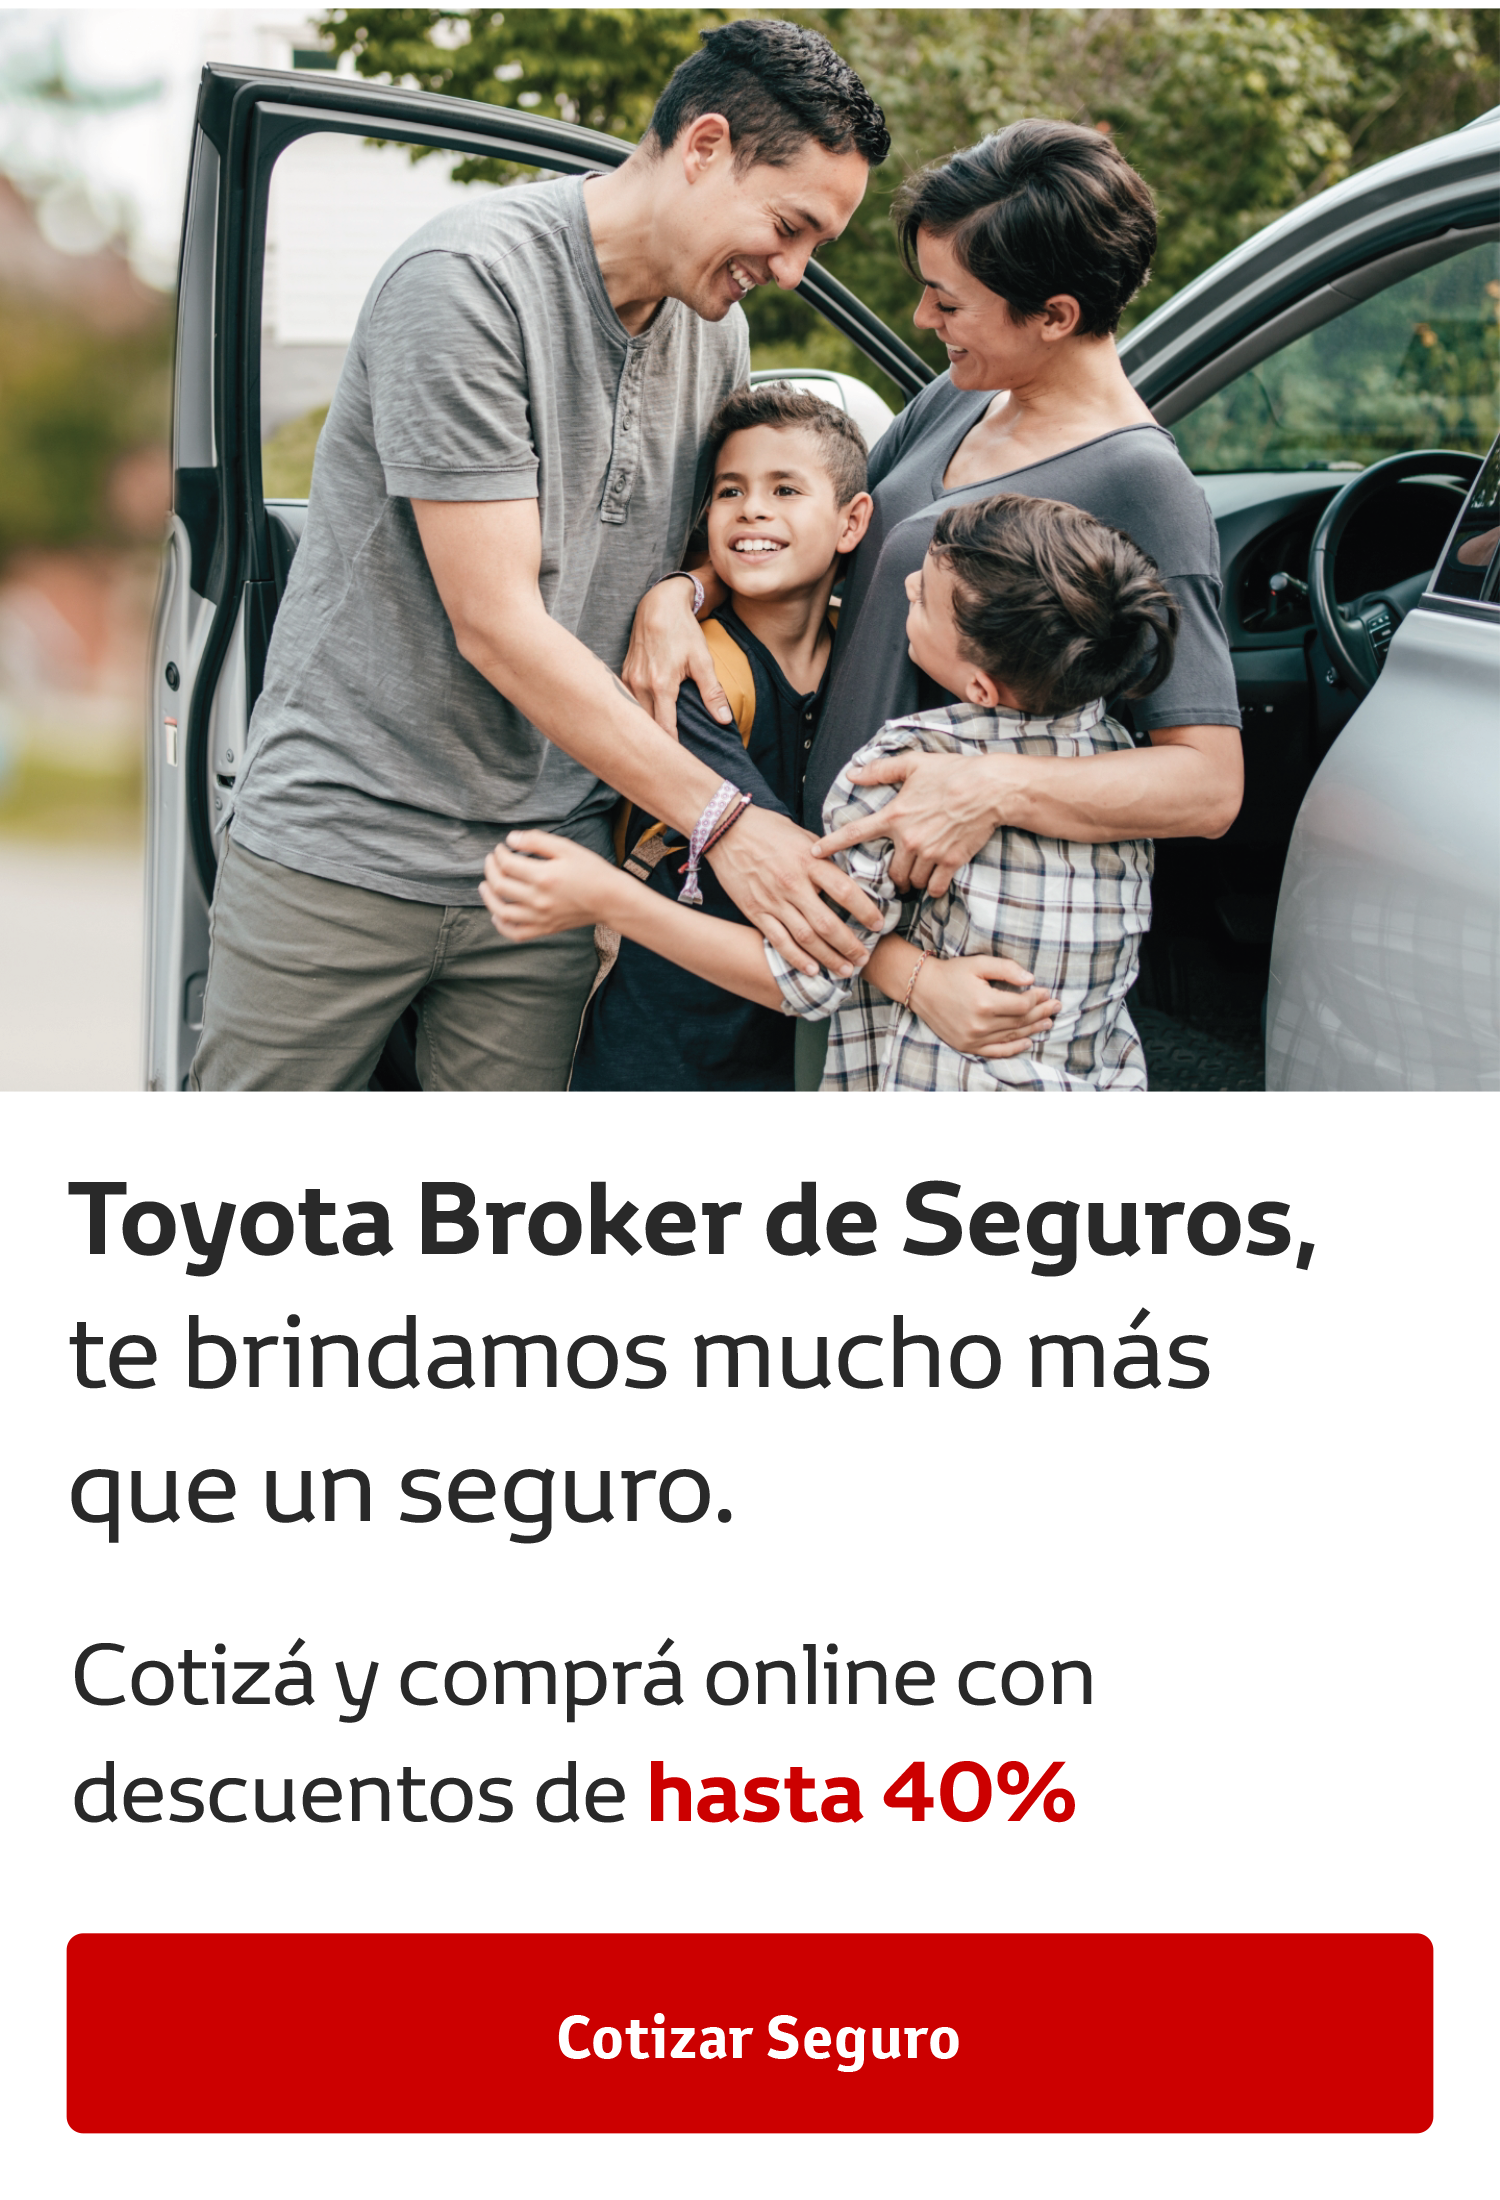 Toyota Brokers